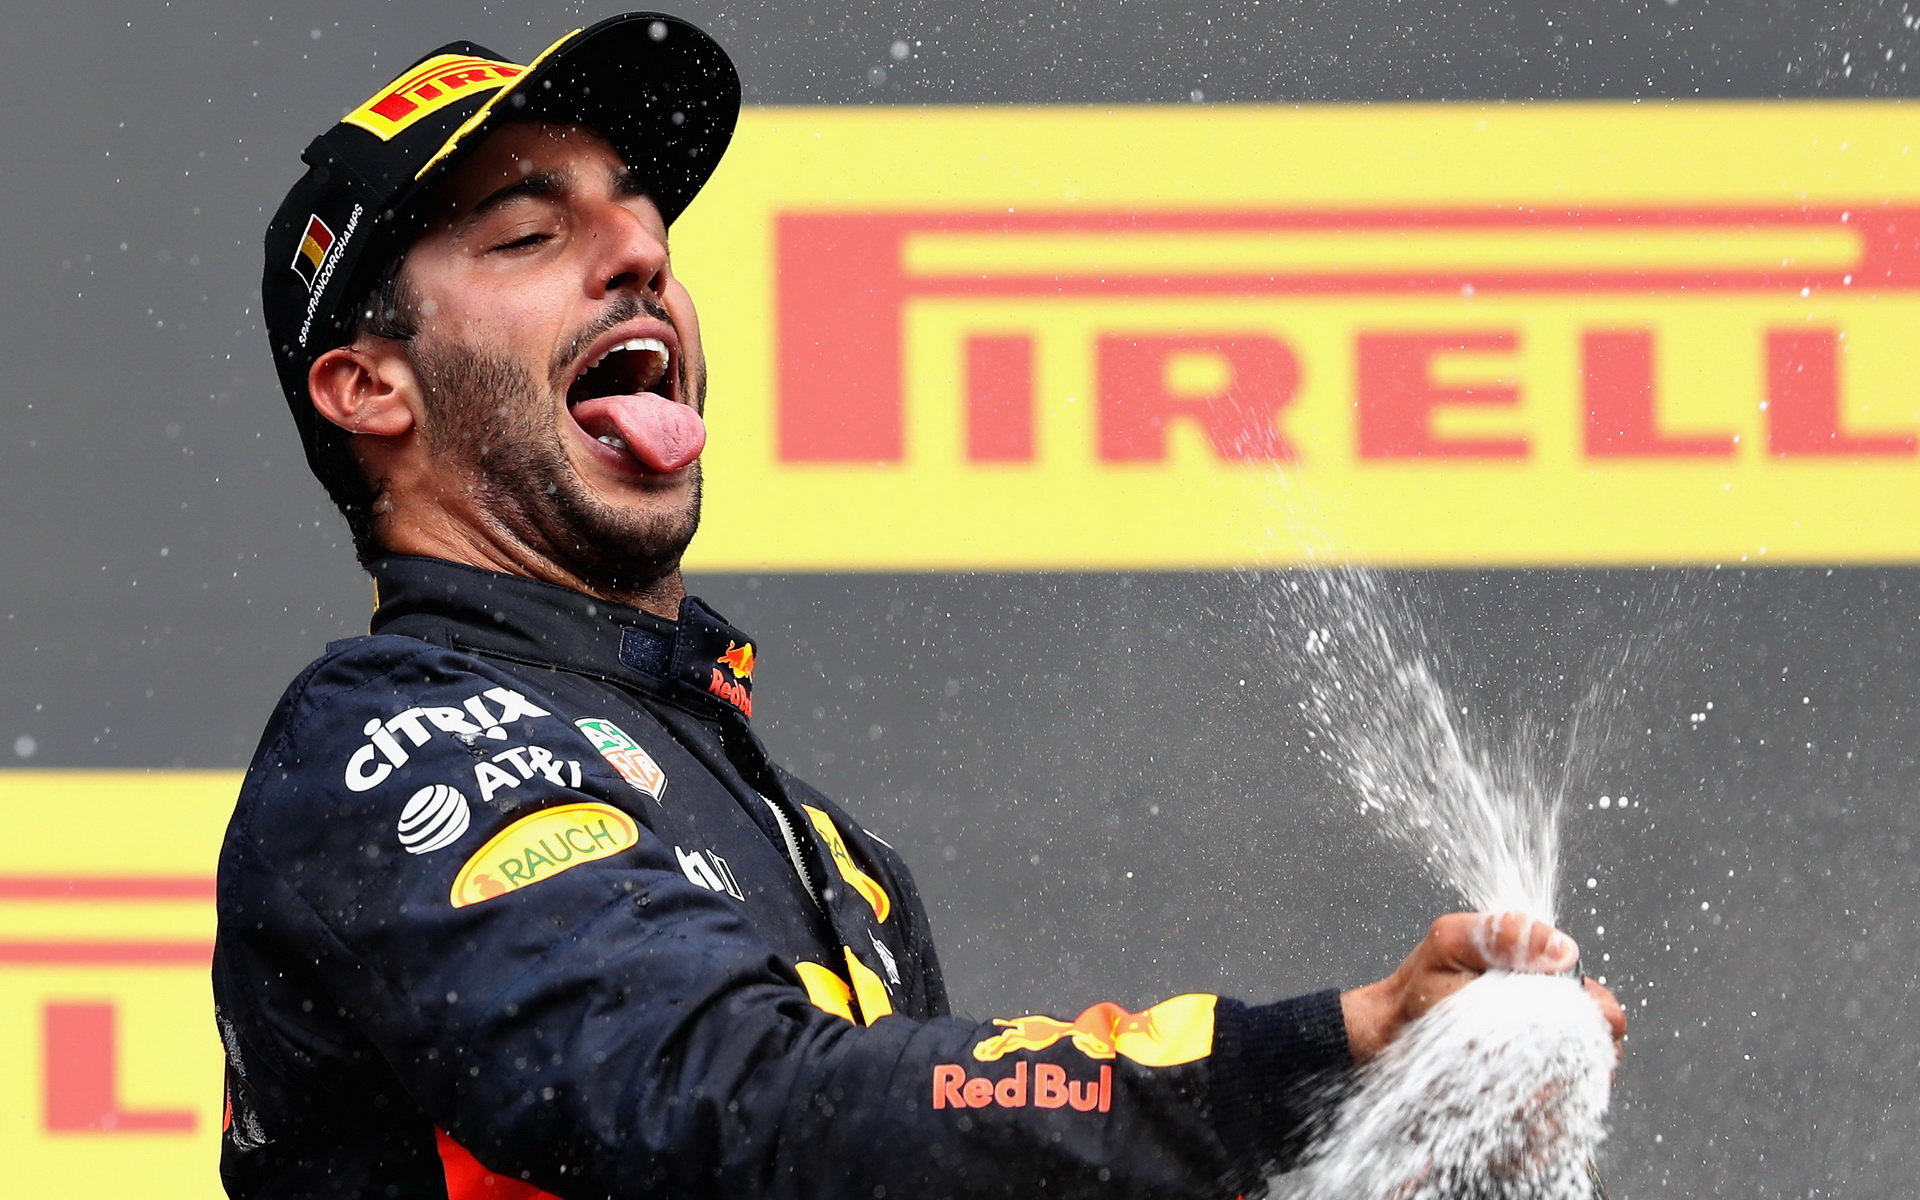 Daniel Ricciardo mohl od příští sezóny hájit barvy Renaultu. Ale nebude